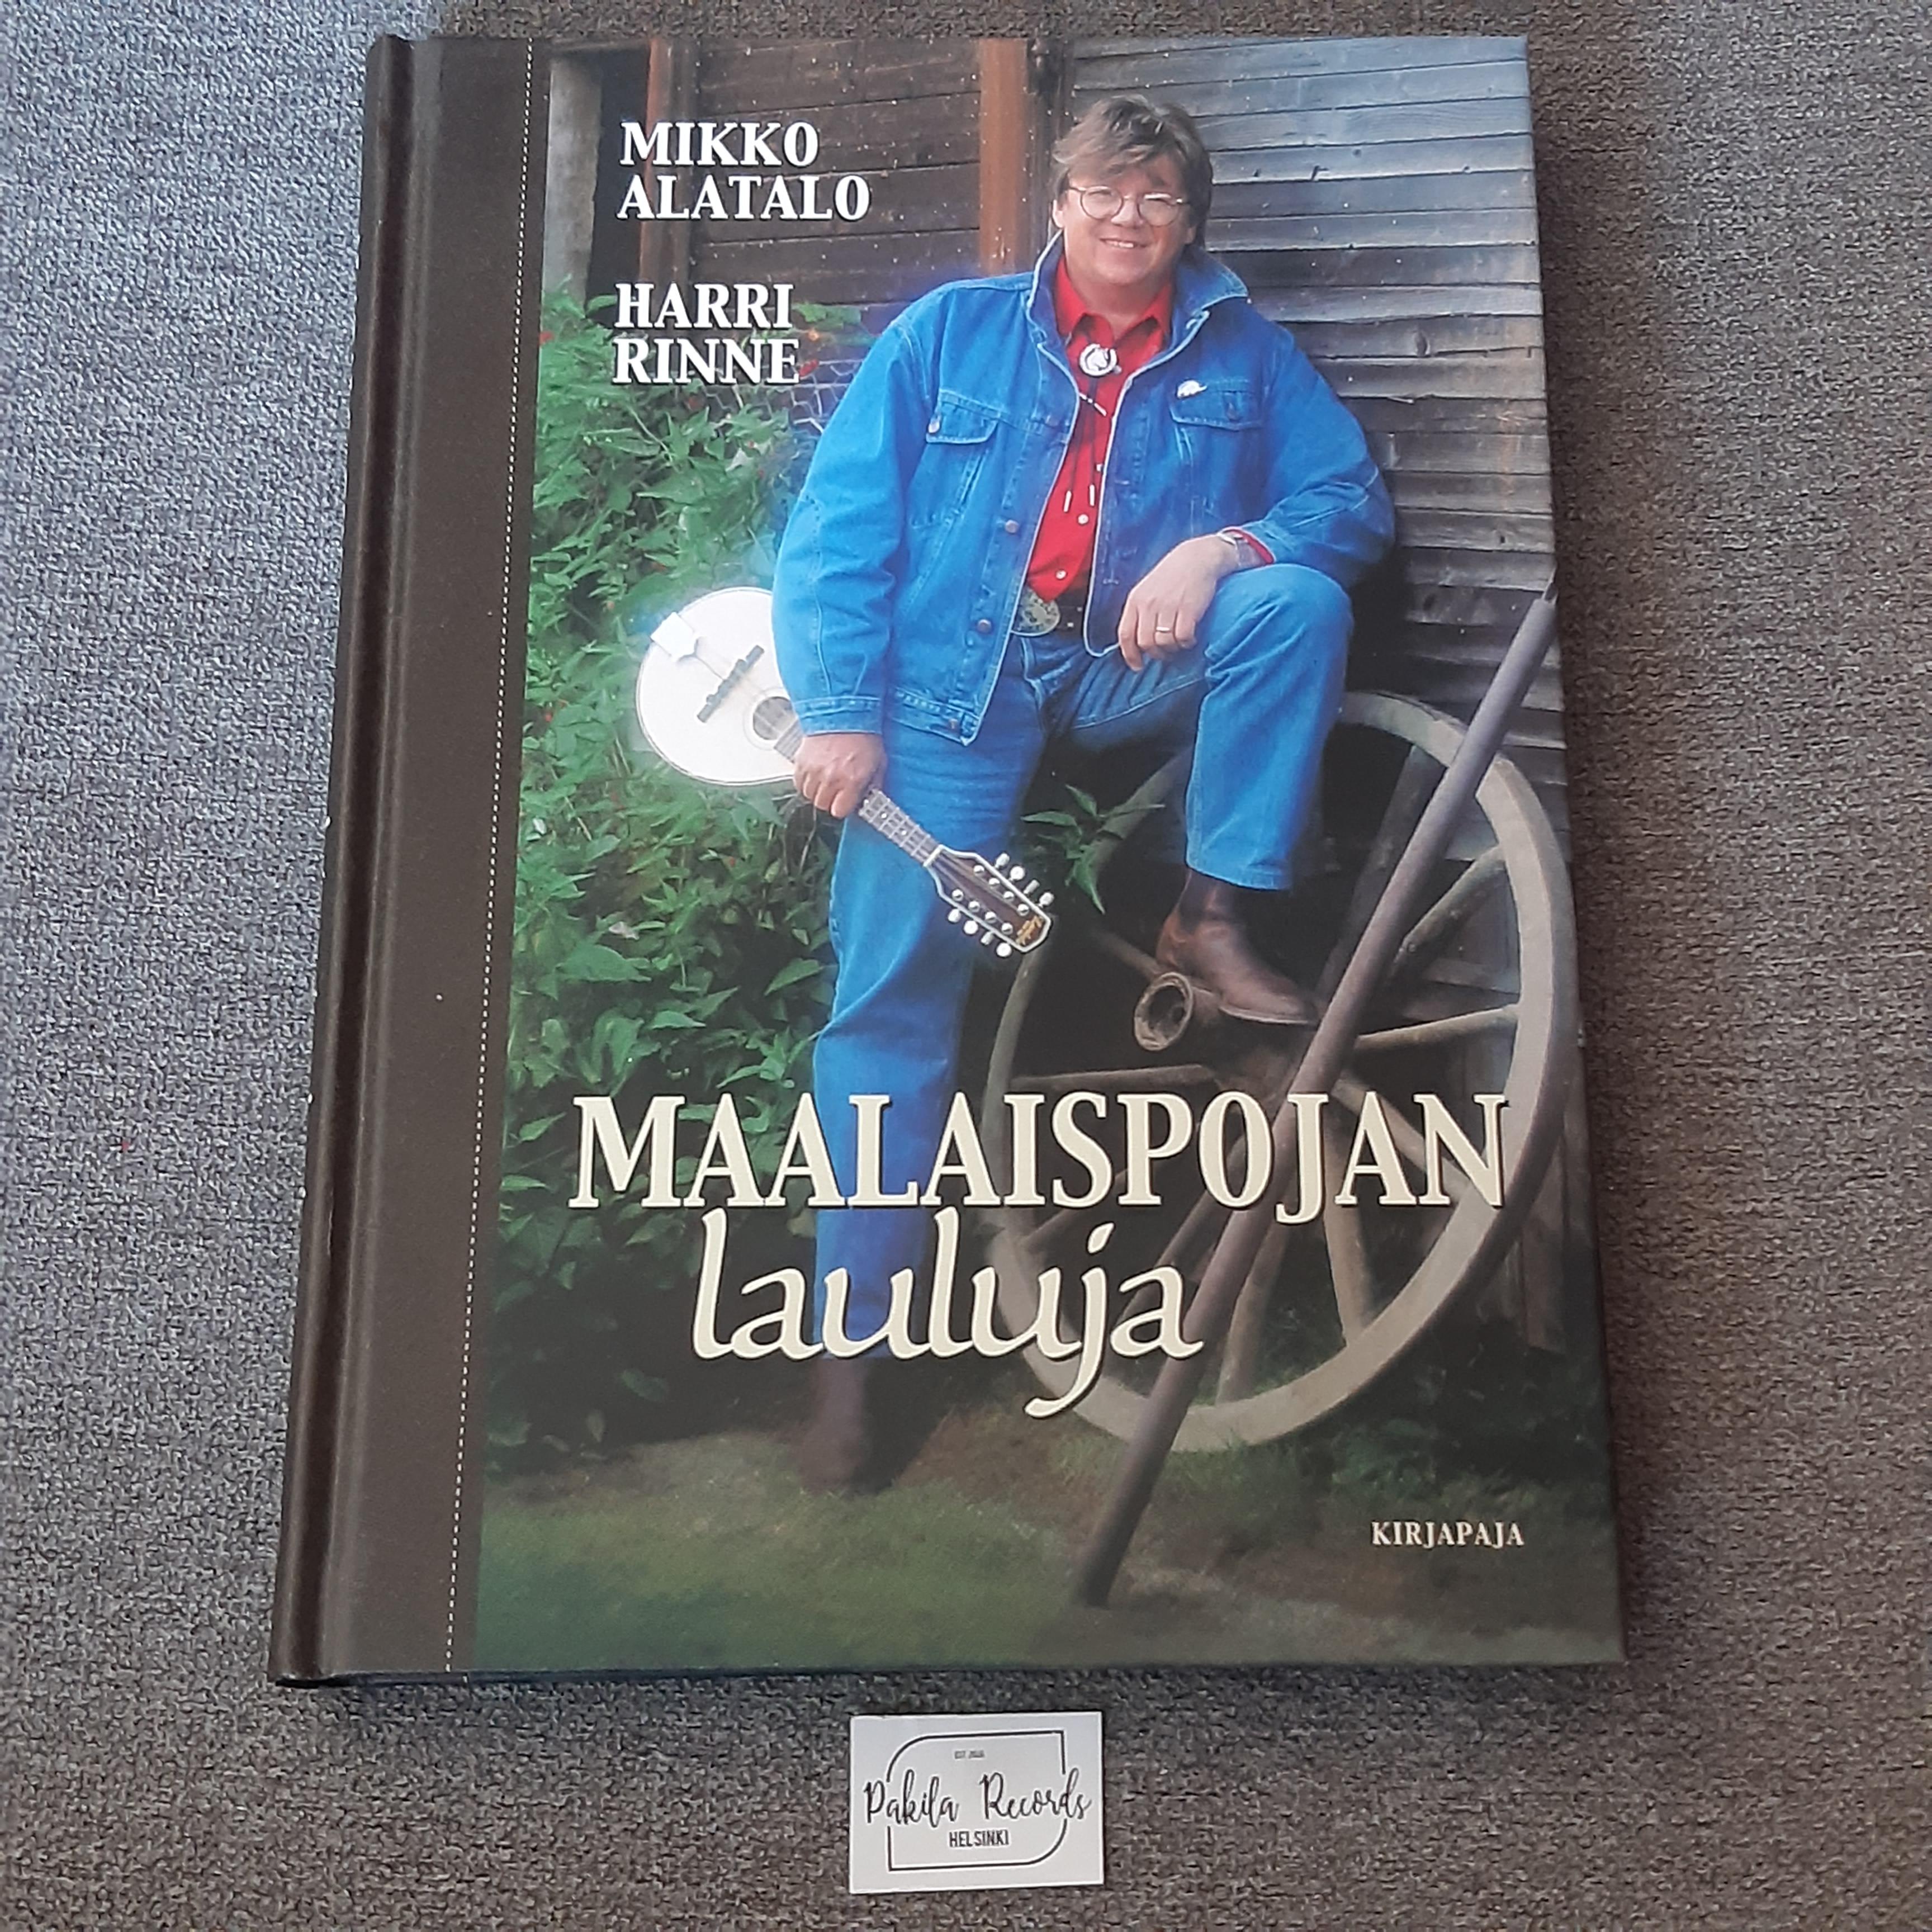 Maalaispojan lauluja - Mikko Alatalo, Harri Rinne - Kirja (käytetty)